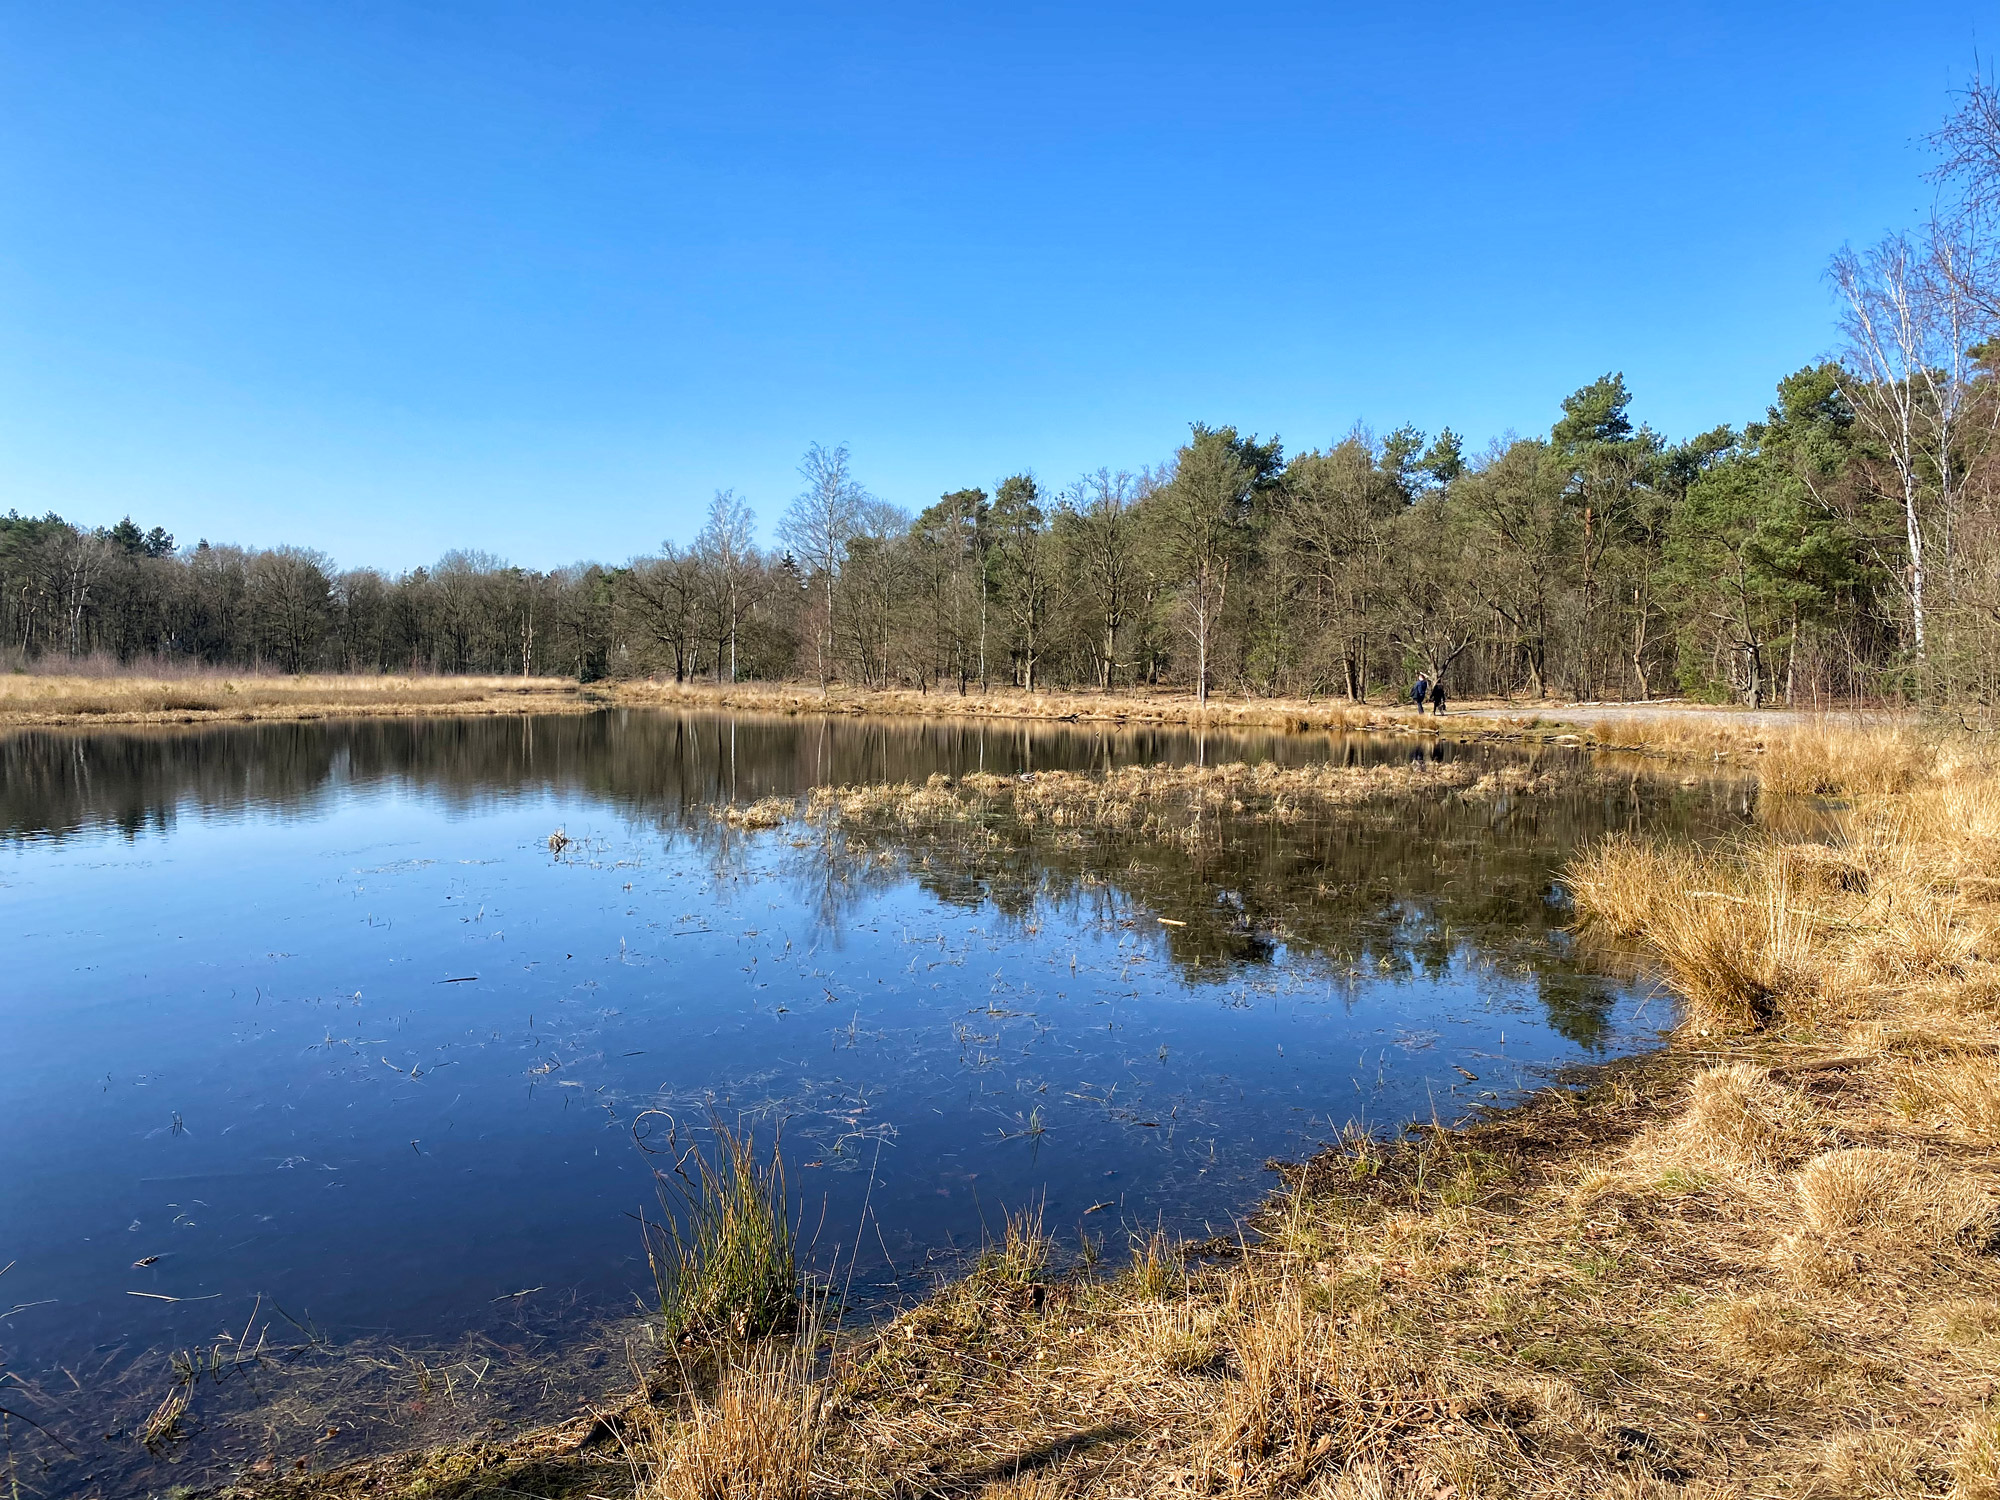 Wandelen in Noord-Brabant: Stratumse Heide & Groote Heide